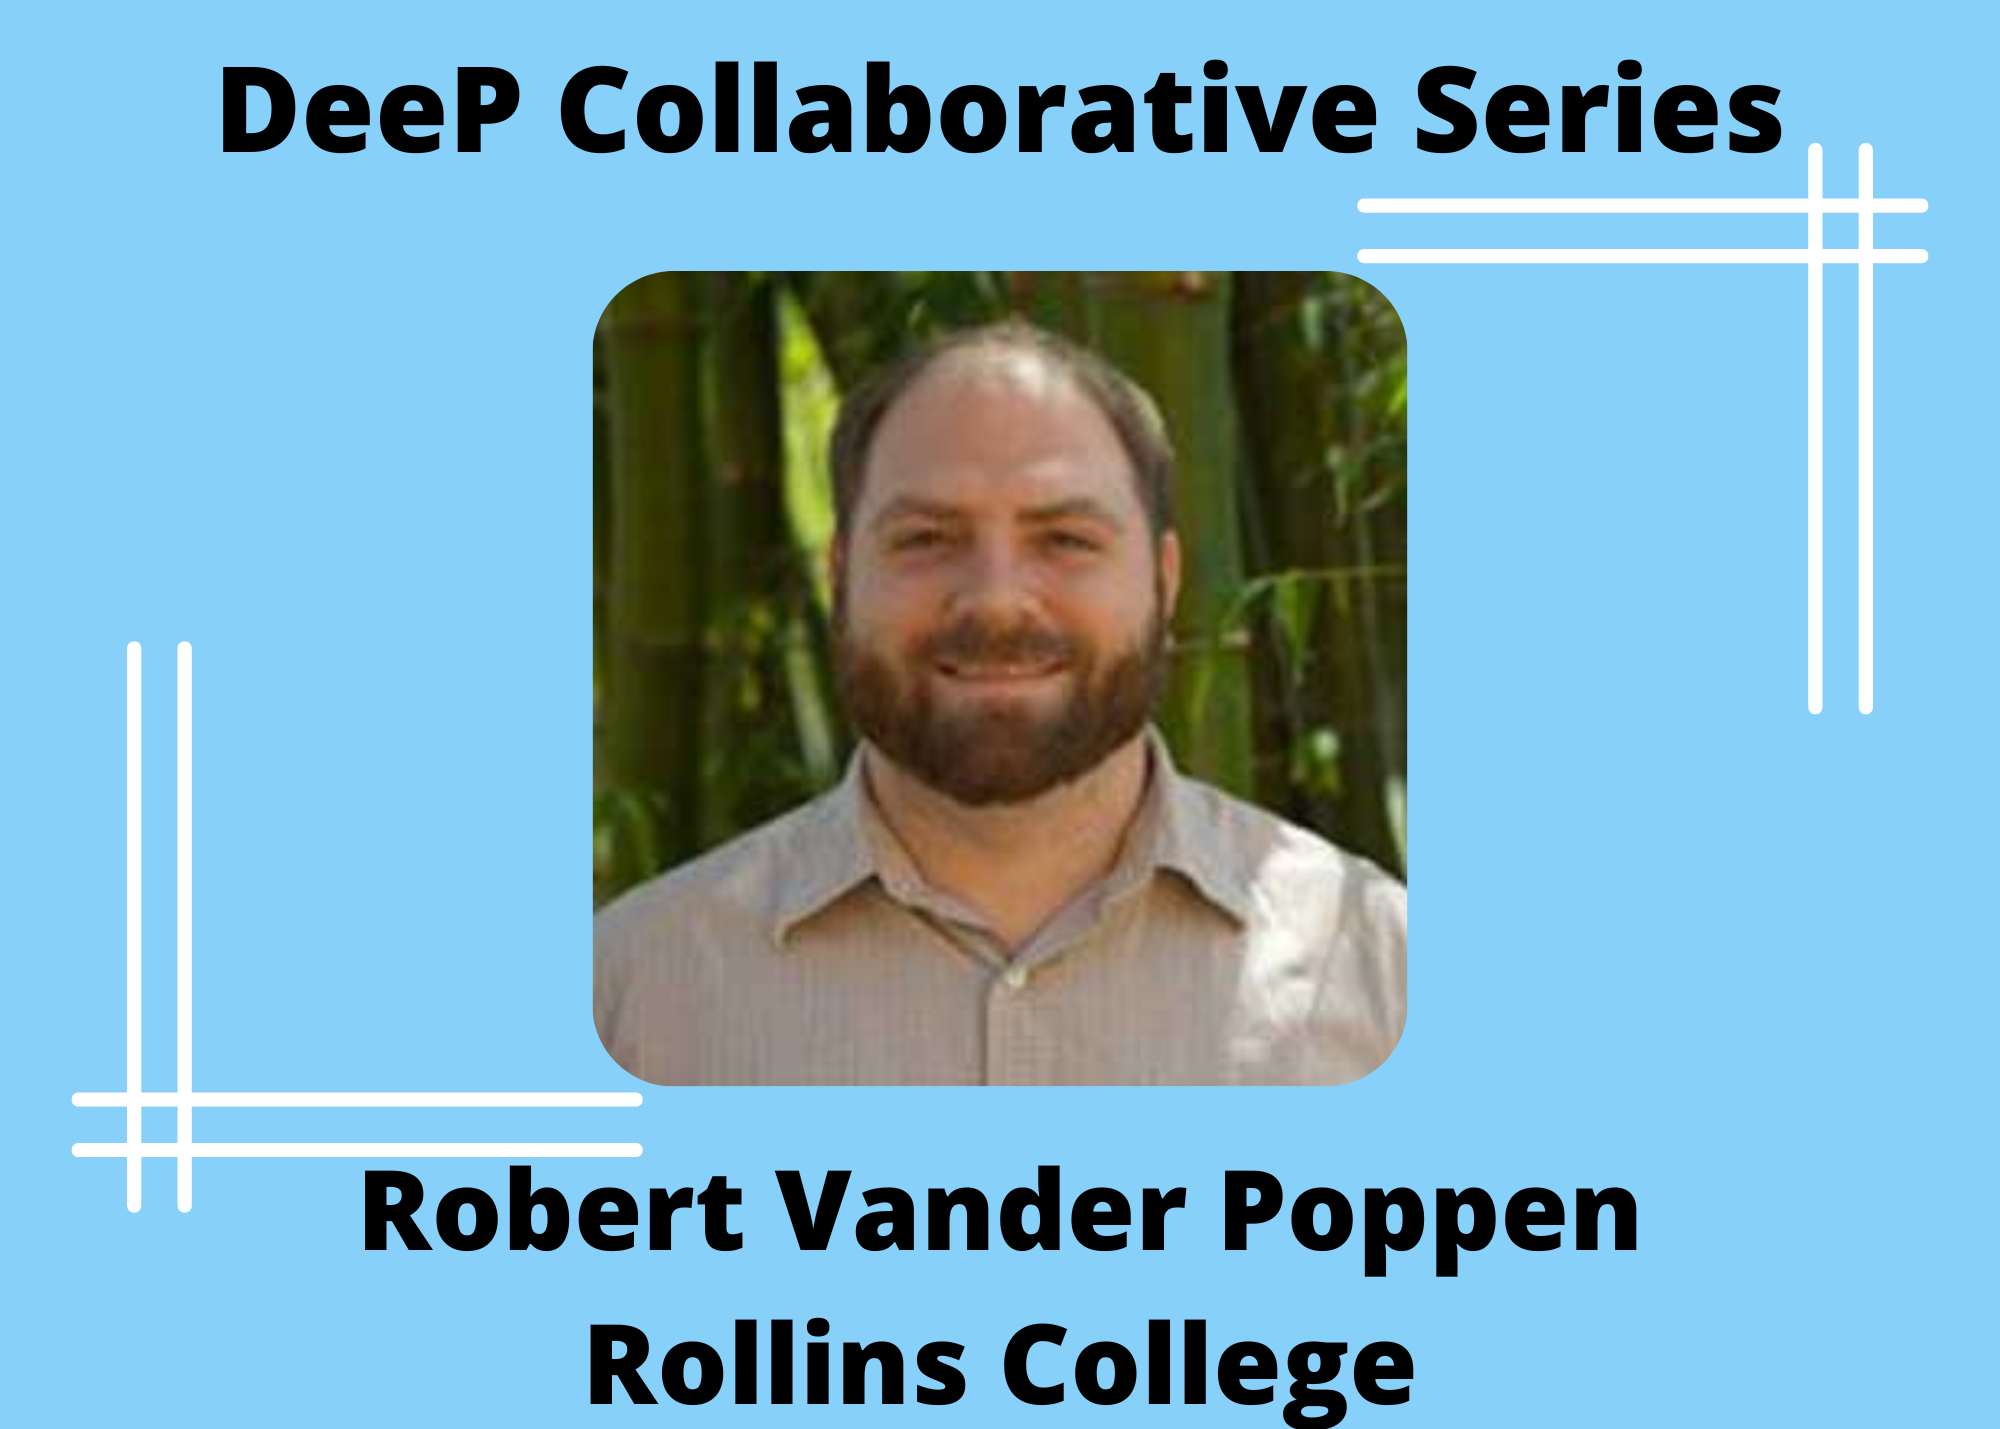 Robert Vander Poppen, Rollins College